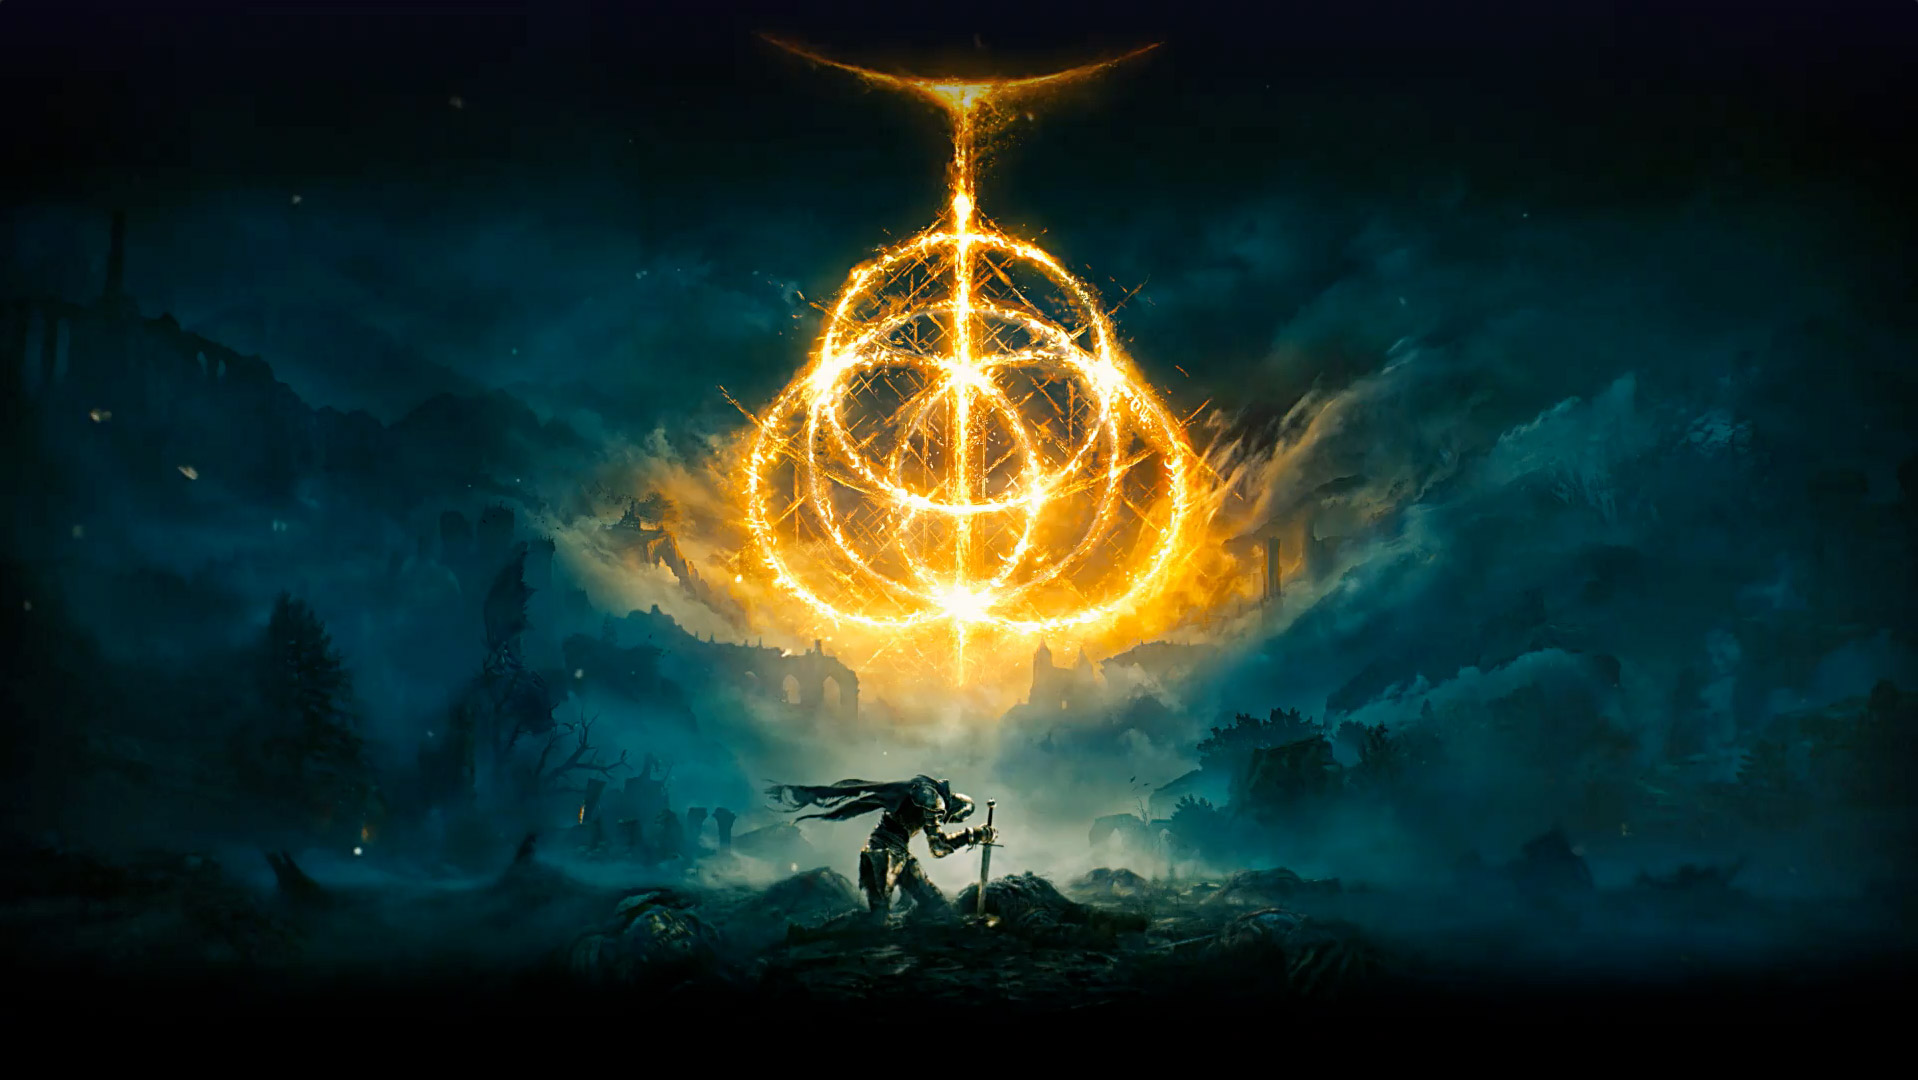 Elden Ring. Varios anillos de fuego que crean el símbolo de Elden Ring. Personaje de caballero con su espada en el suelo en una zona desolada con niebla.